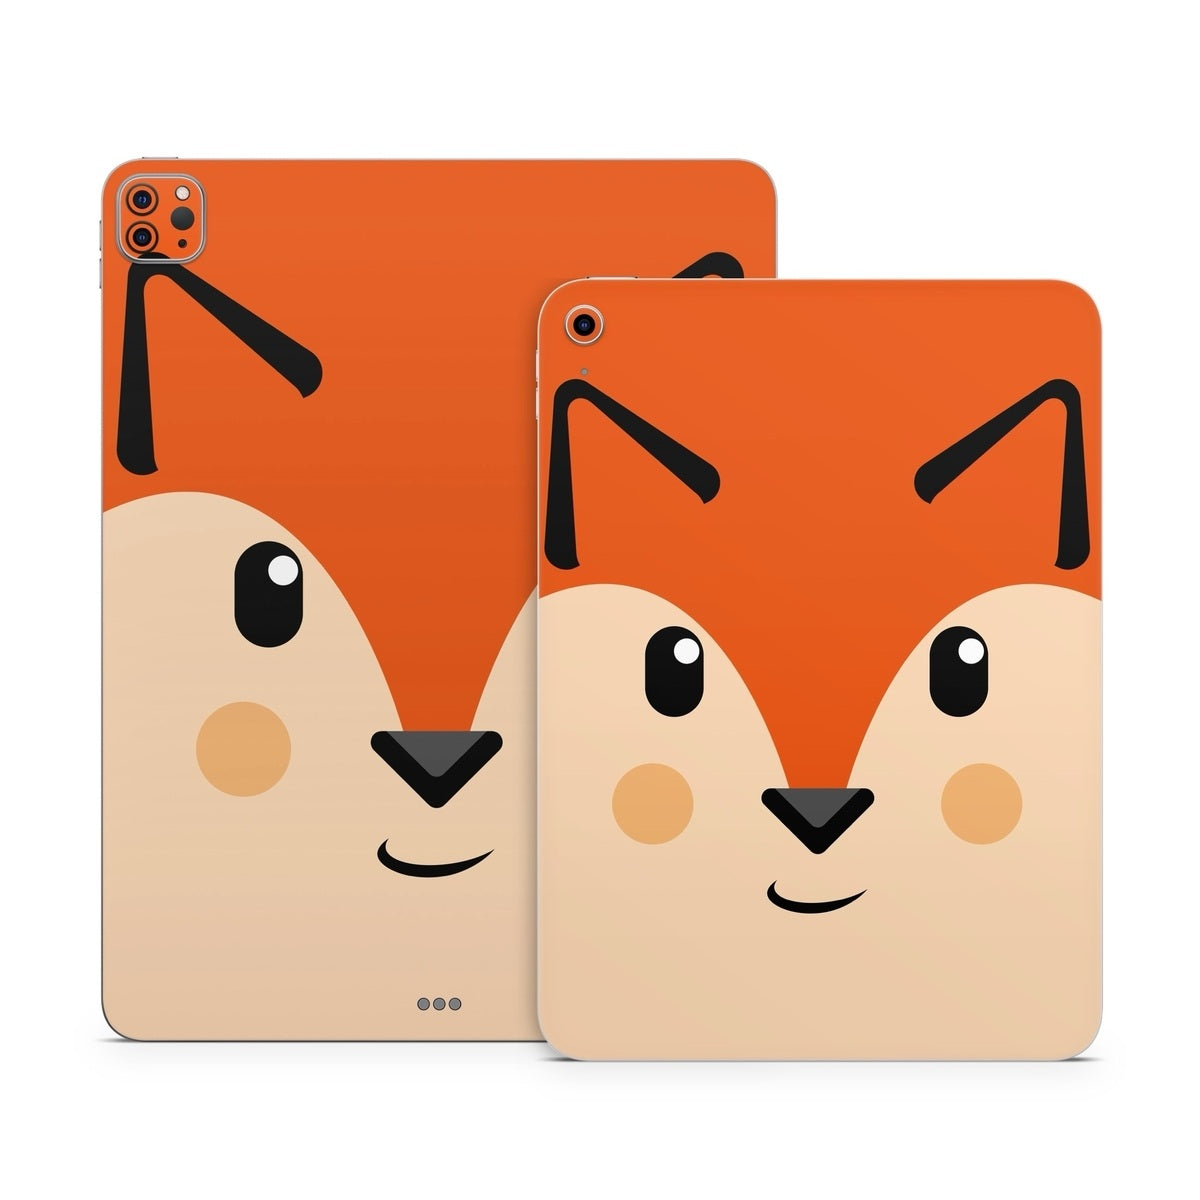 Autumn the Fox - Apple iPad Skin